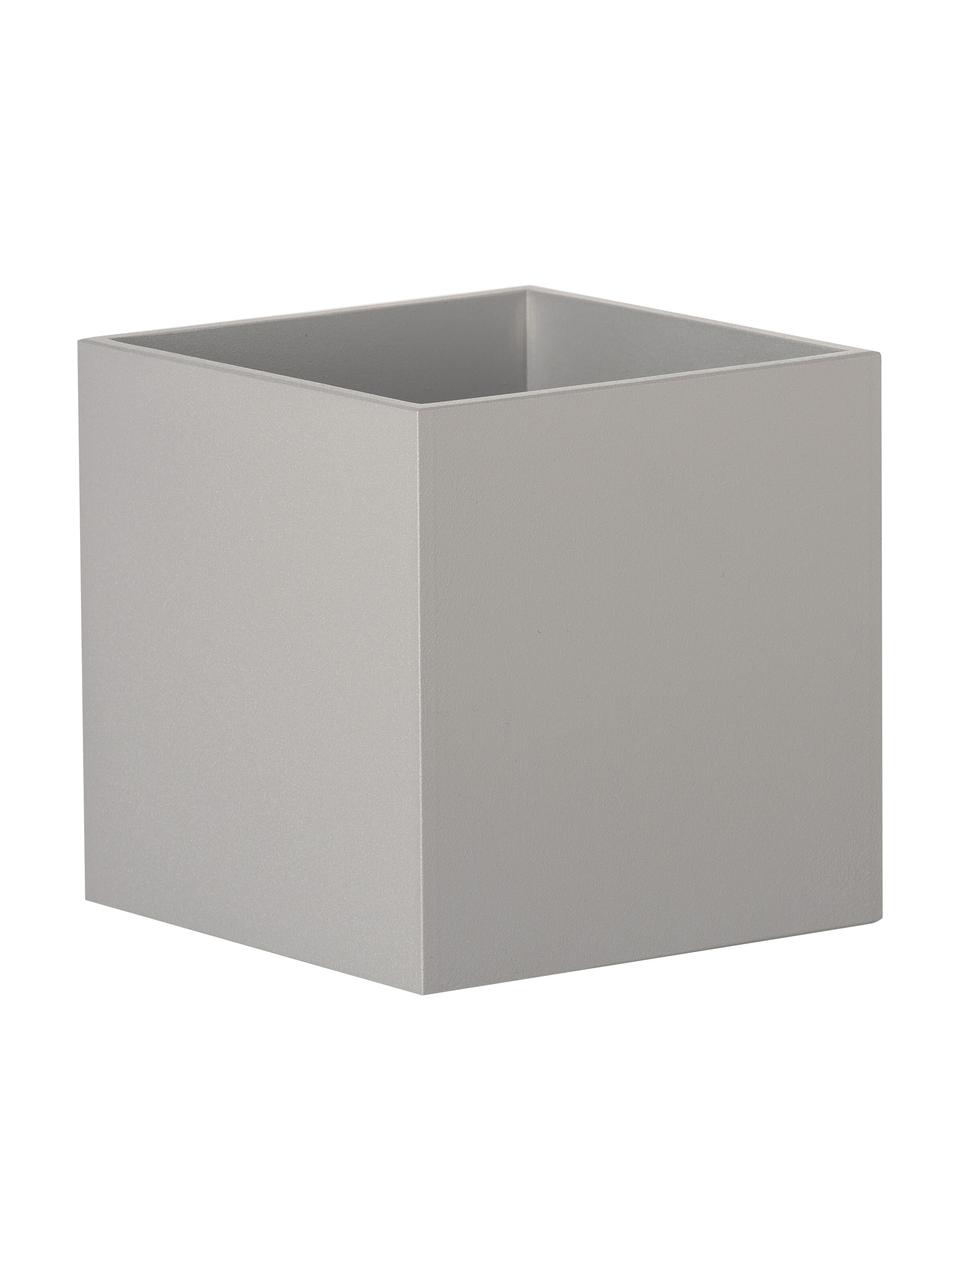 Kleine Wandleuchte Quad in Grau, Lampenschirm: Aluminium, pulverbeschich, Grau, 10 x 10 cm